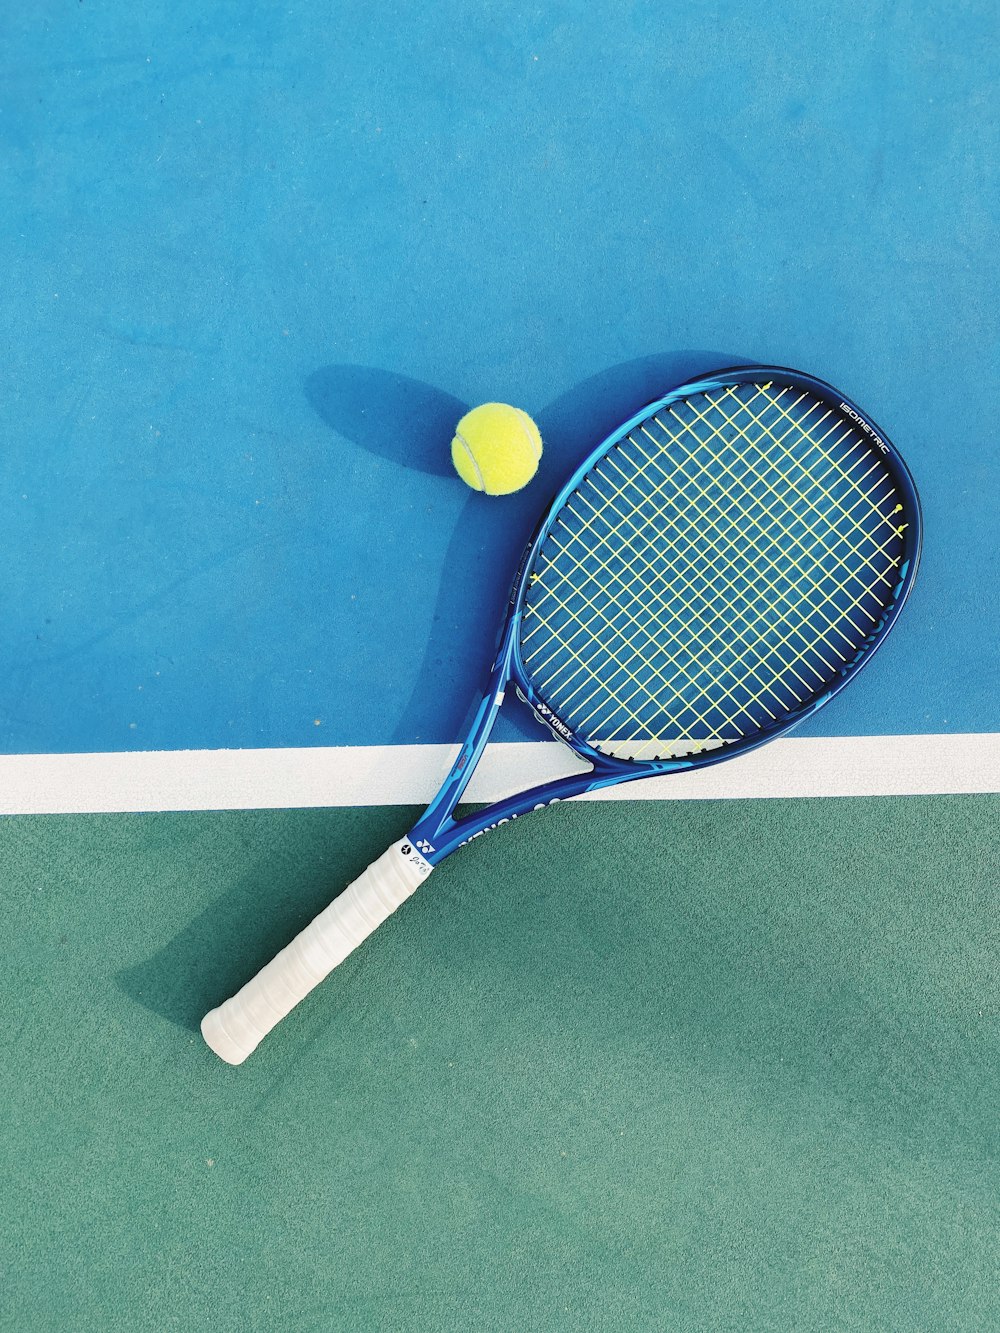 raquete de tênis branca e azul